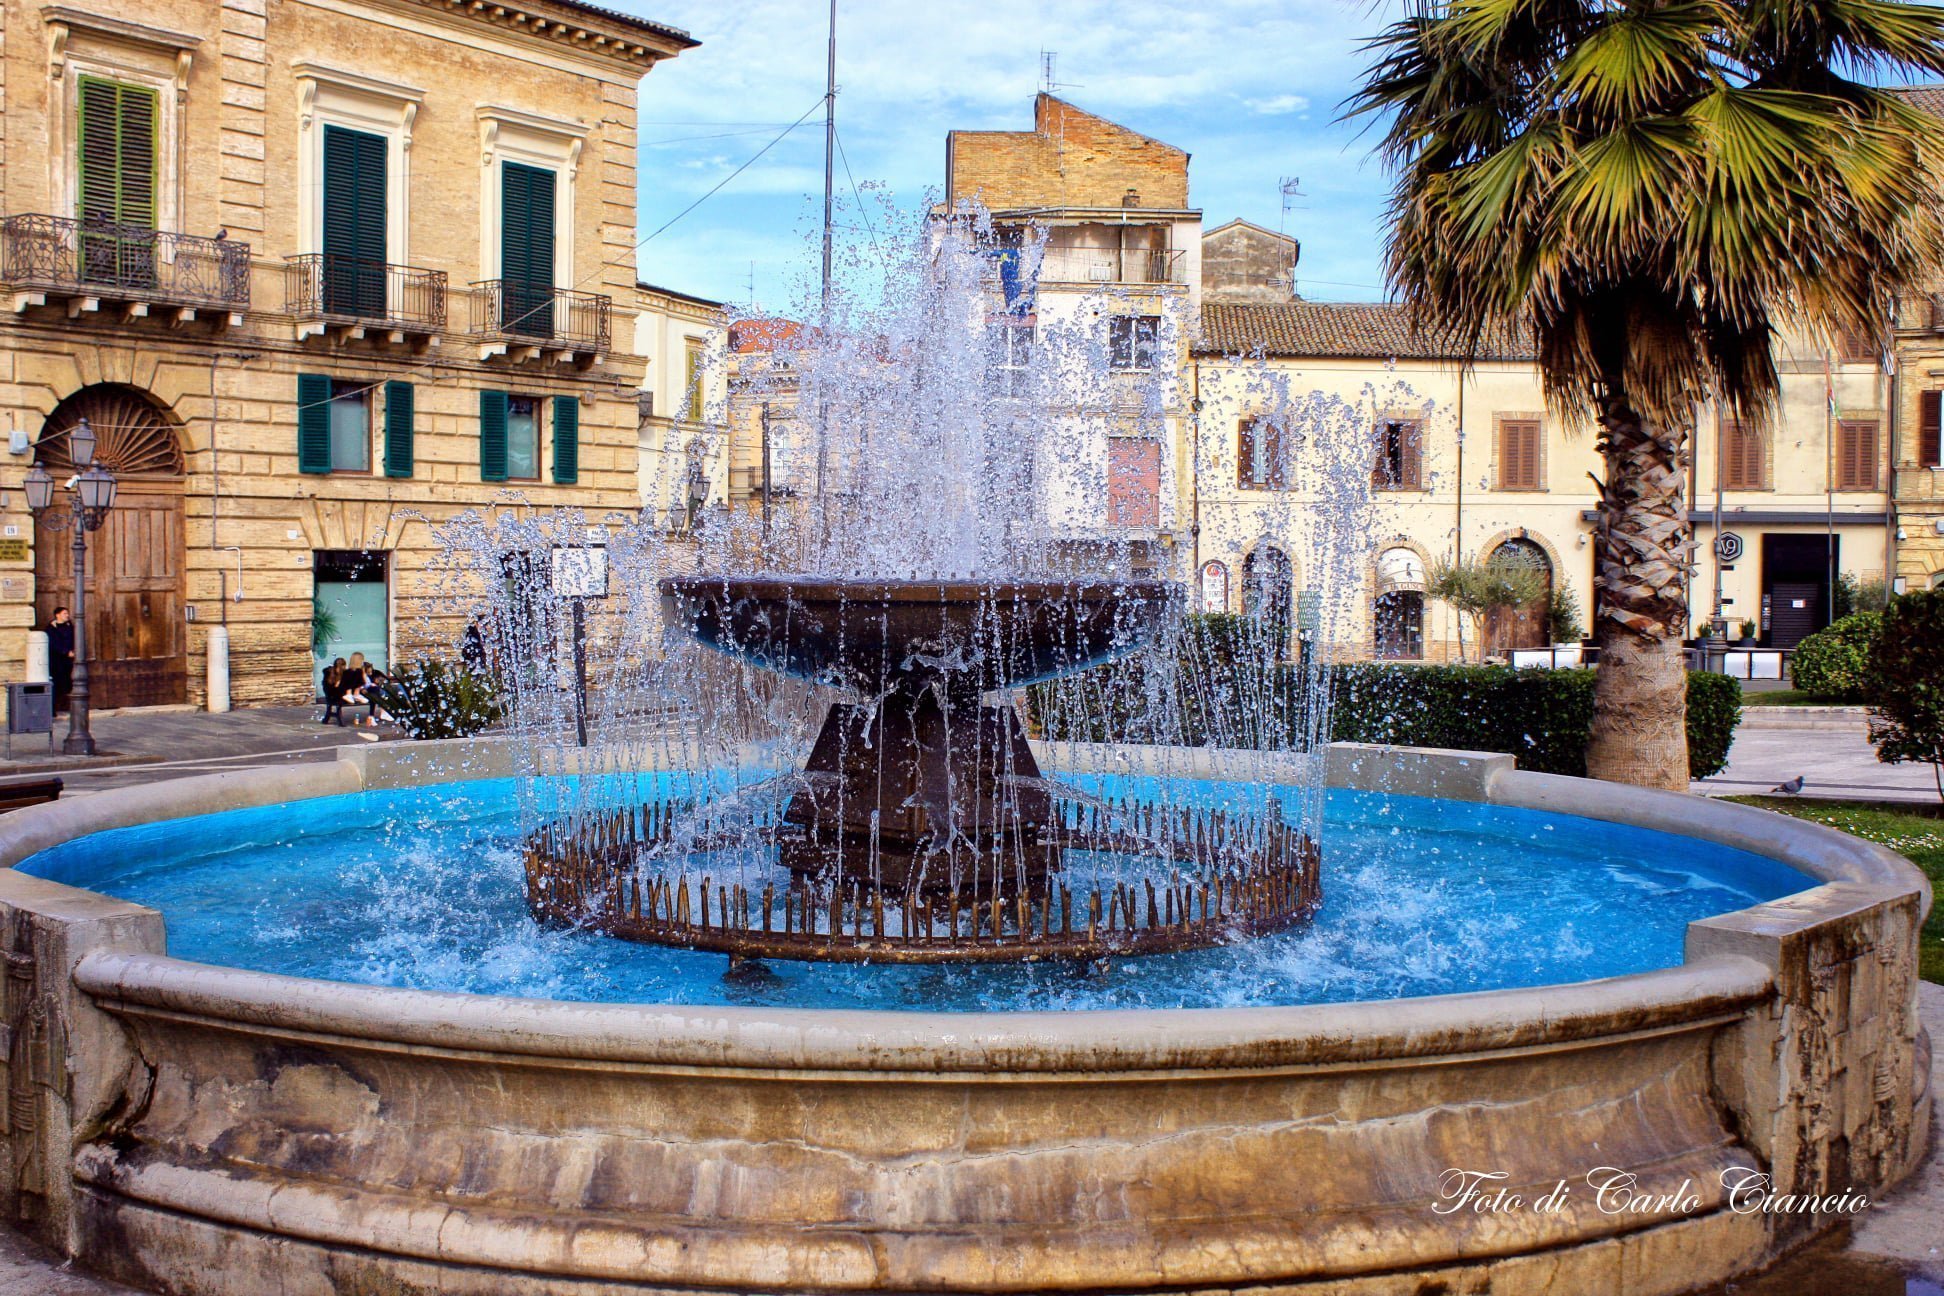 Vasto. La fontana, la statua e la torre benvenuti in Piazza Rossetti, tra le più eleganti d'Abruzzo